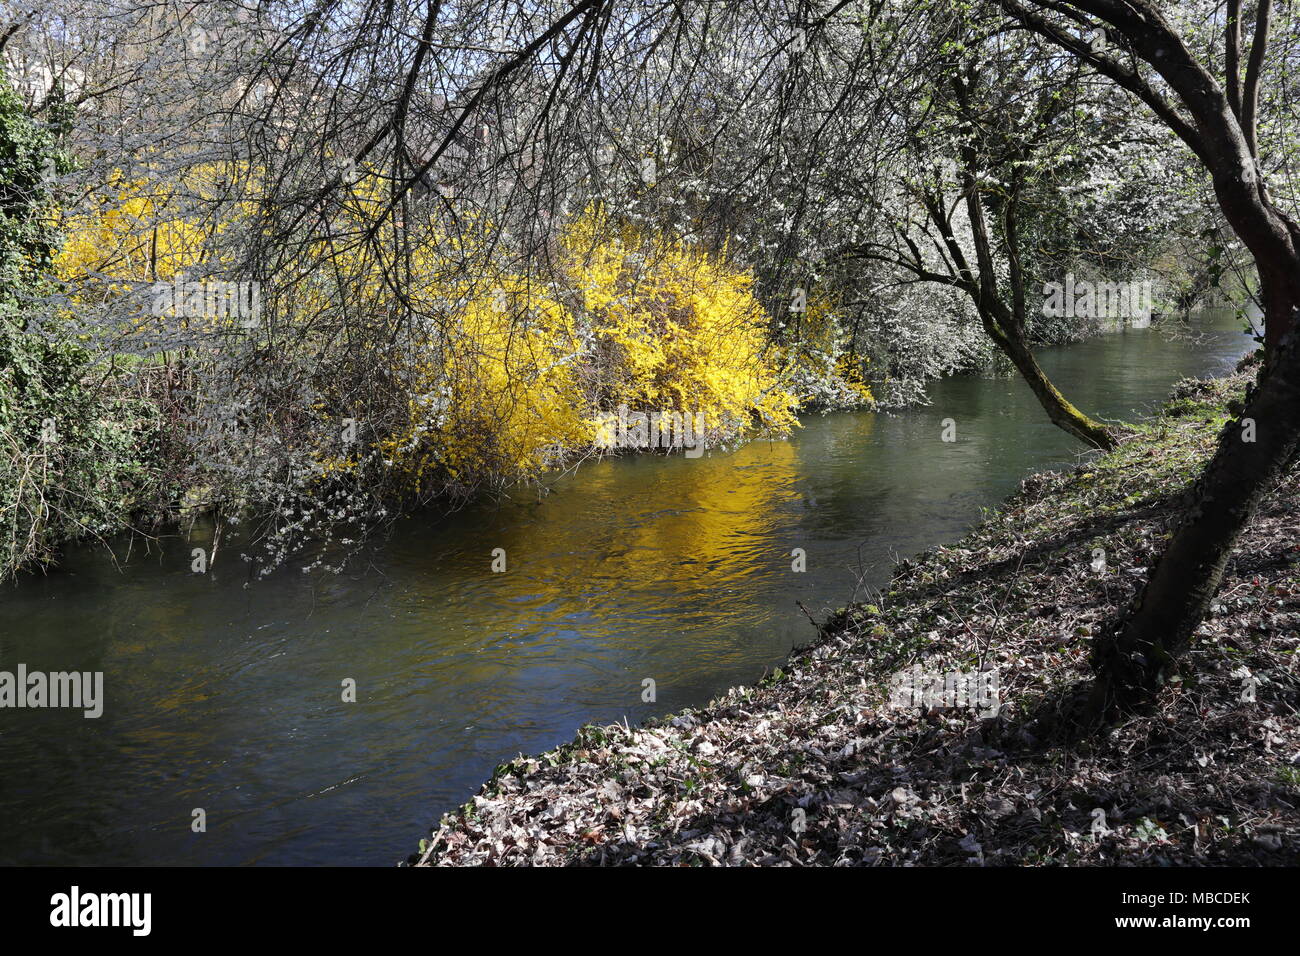 Frühling, Bäume mit weissen Blüten und eine gelb blühende Strauch am Ufer eines Kanals, Reflexion auf dem Wasser Stockfoto